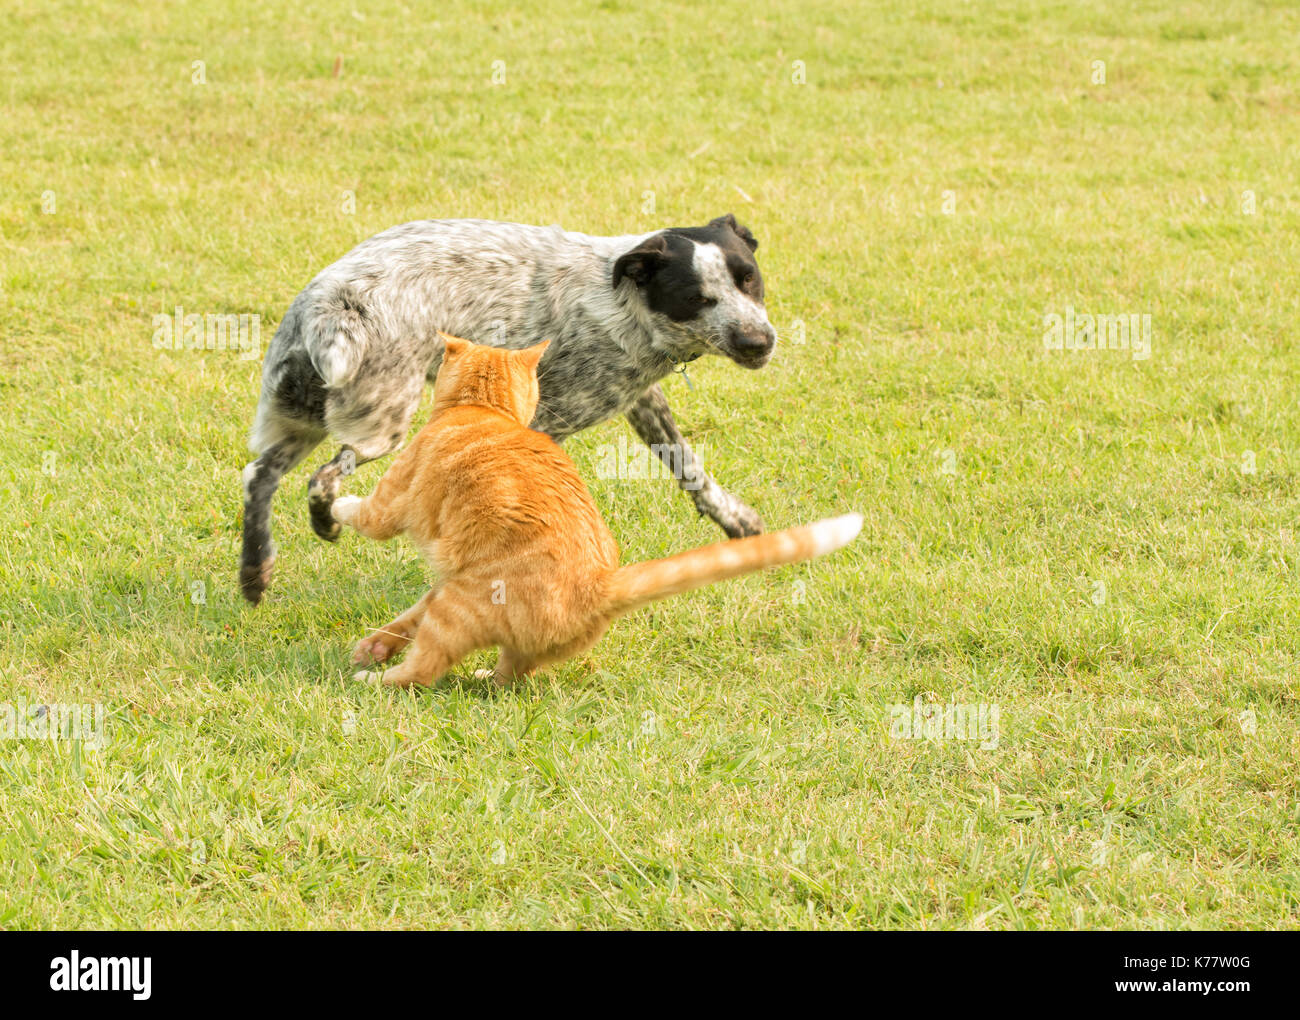 Lo zenzero tabby cat swatting presso un odioso spotted dog, proteggendo il suo spazio personale Foto Stock